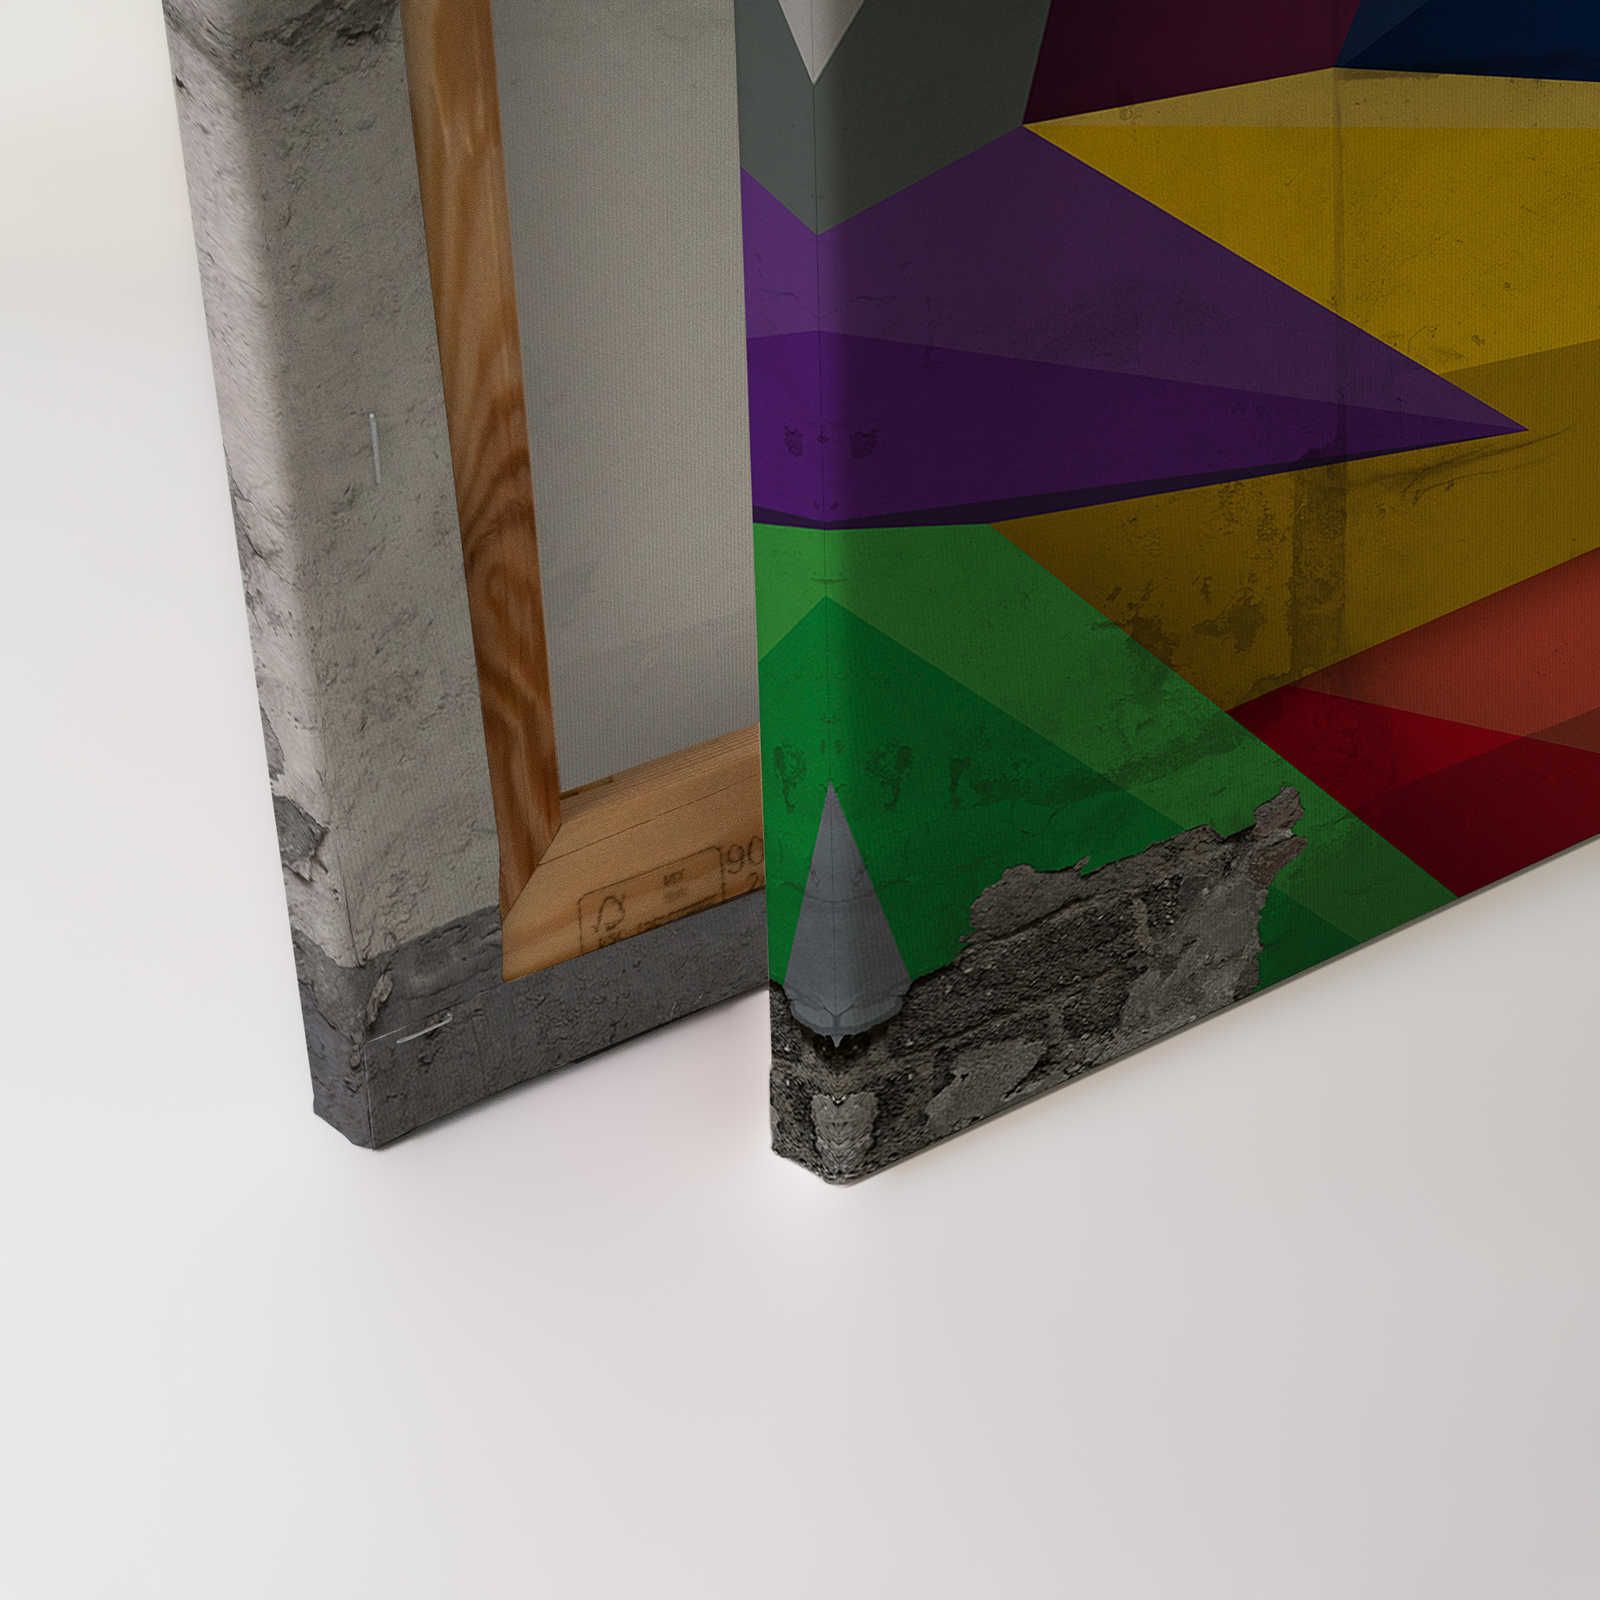             Canvas schilderij betonlook met grafisch ontwerp - 0,90 m x 0,60 m
        